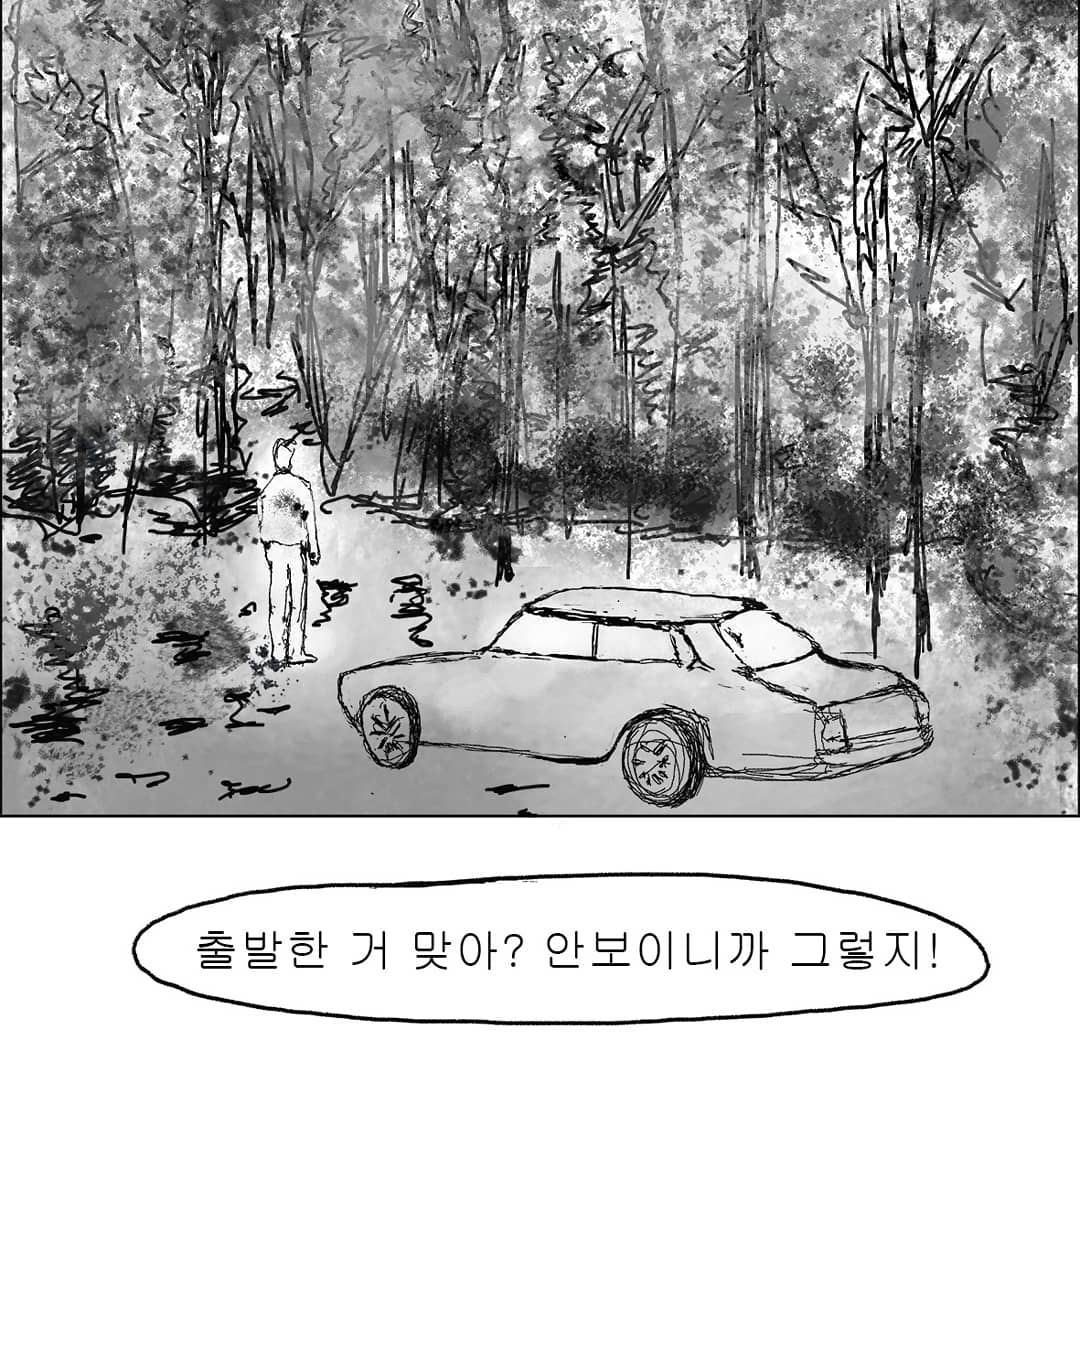 2019년도 인스타툰 '안까이' 장면 01